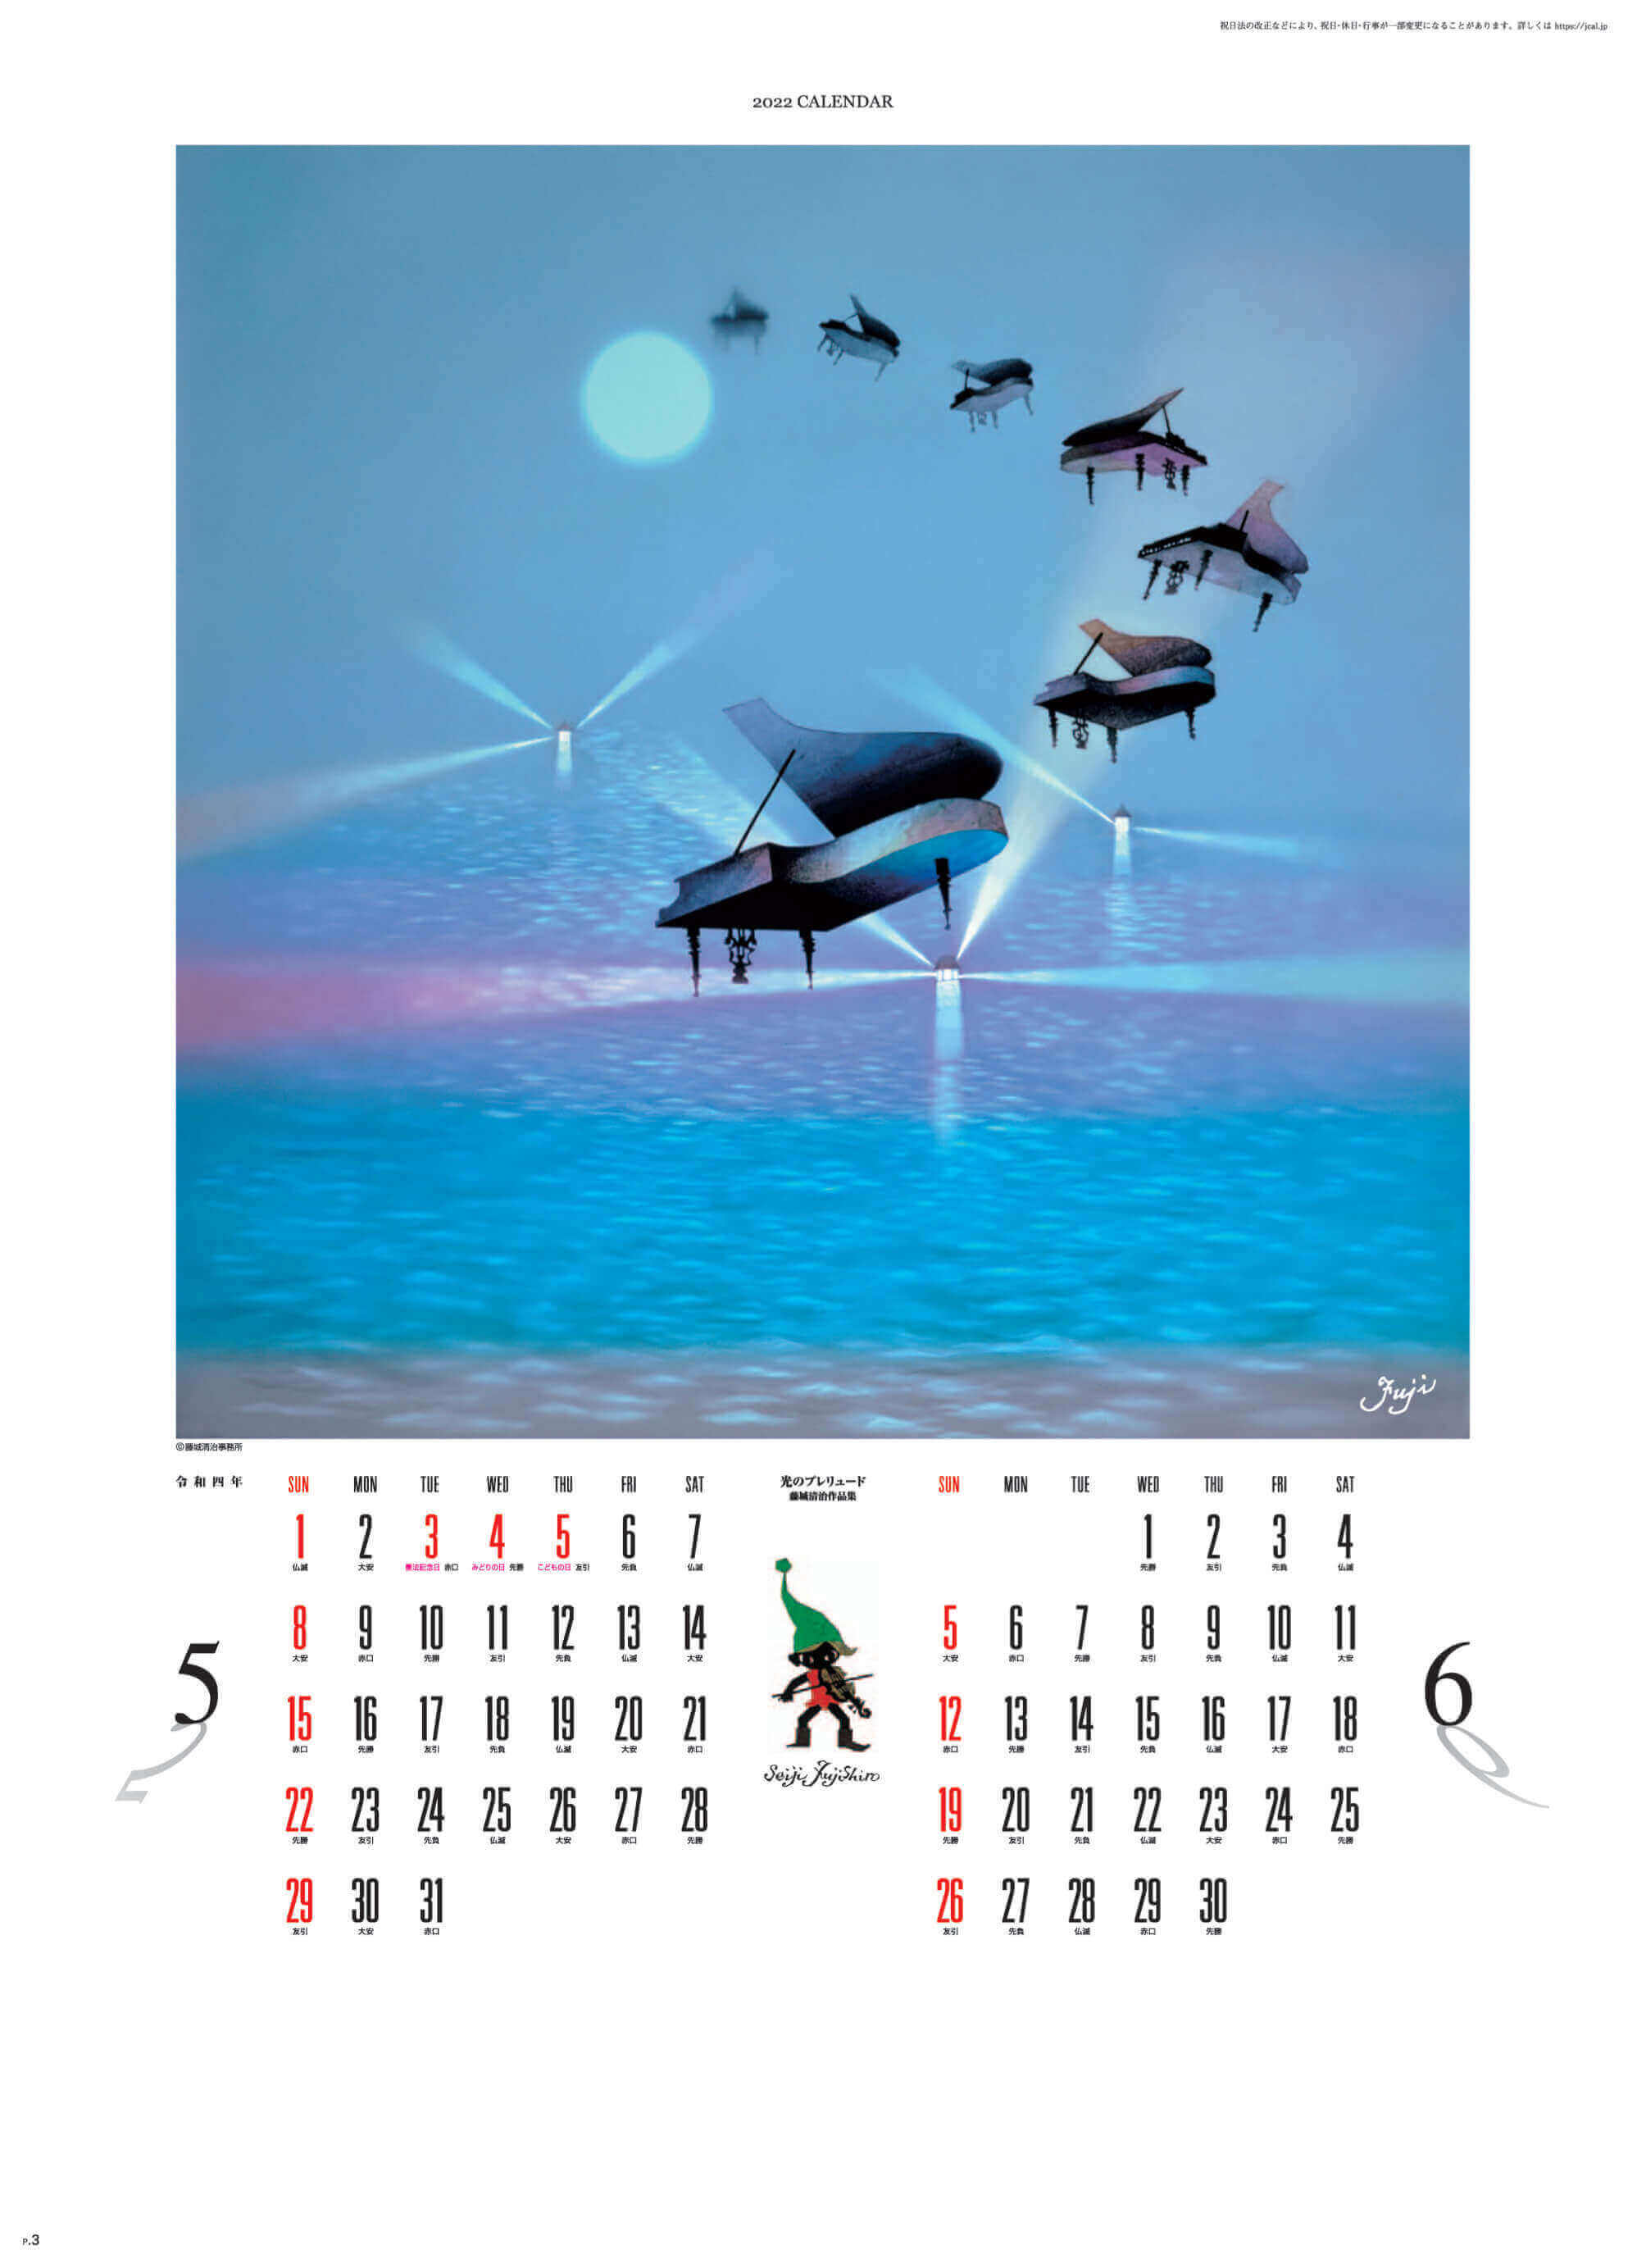 5-6月 光のプレリュード 遠い日の風景から(影絵) 藤城清治 2022年カレンダーの画像